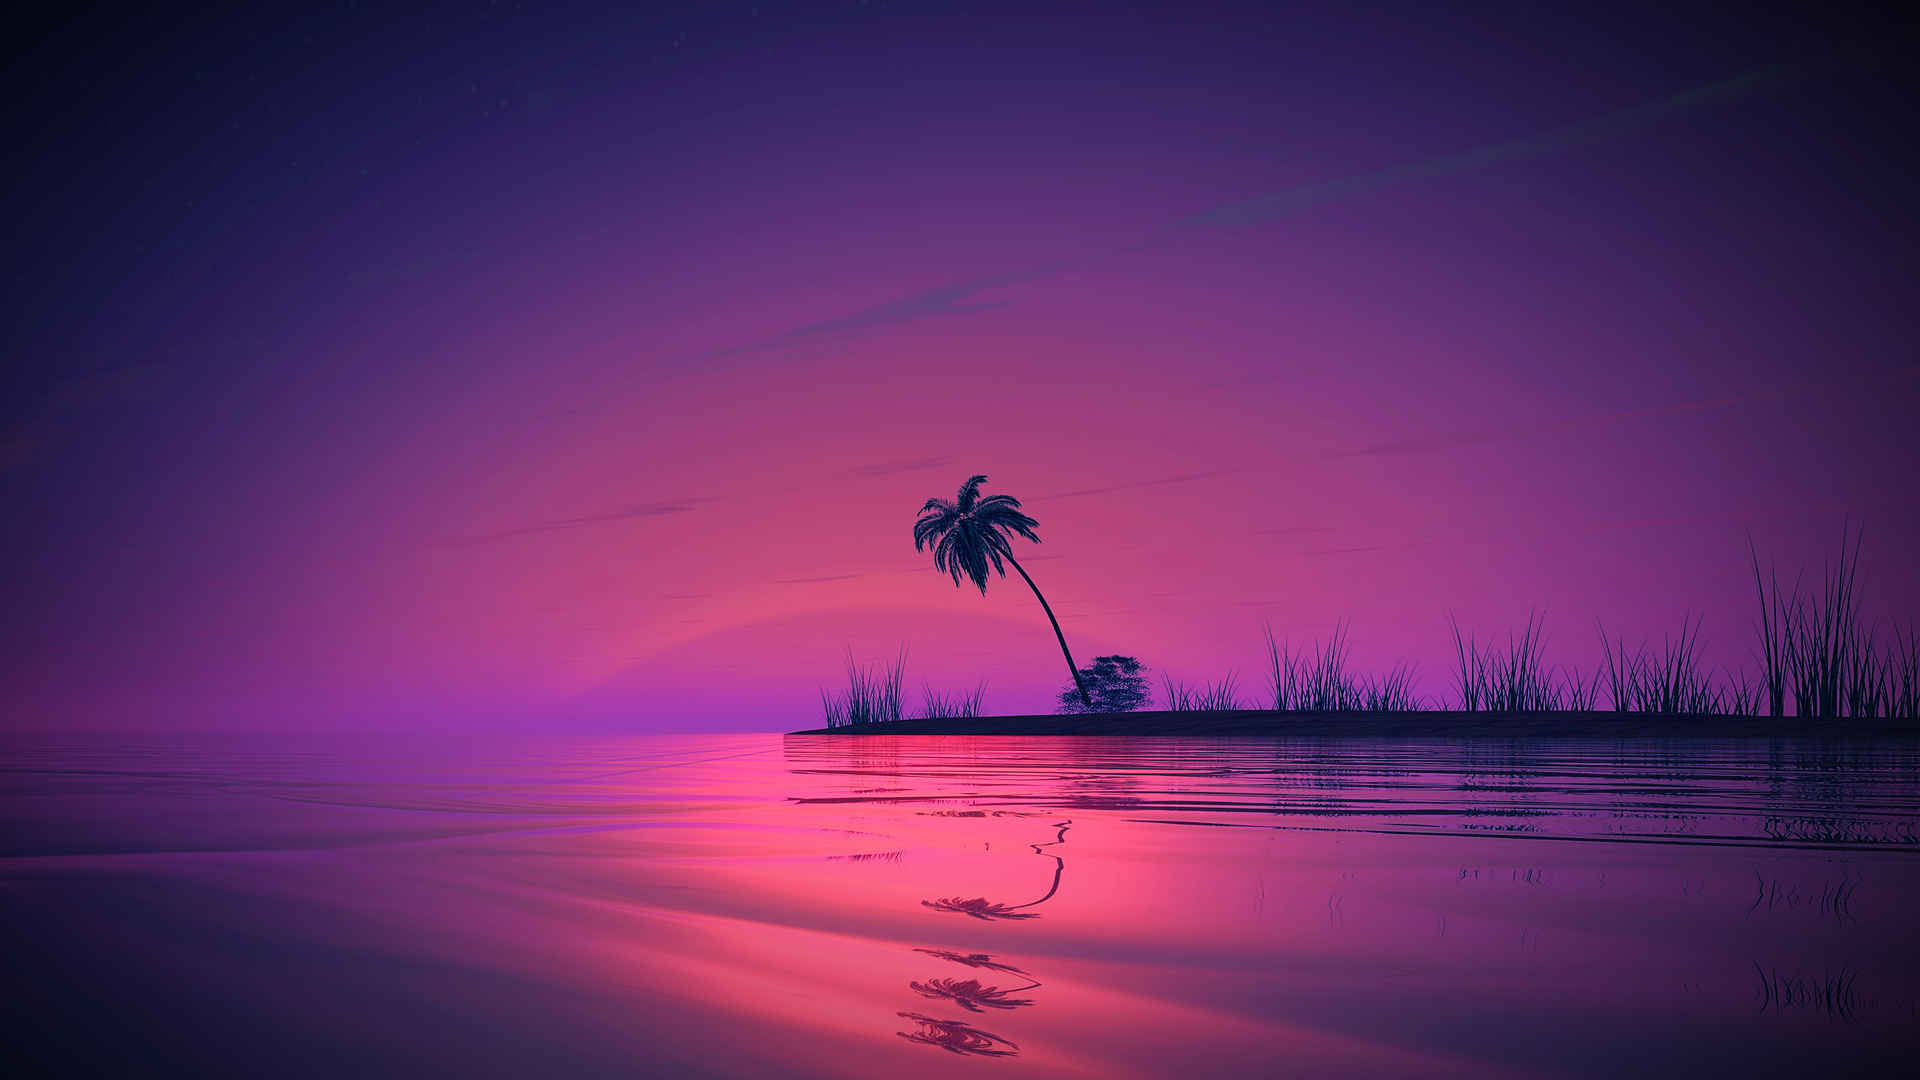 海滩棕榈湾夕阳动漫风景壁纸